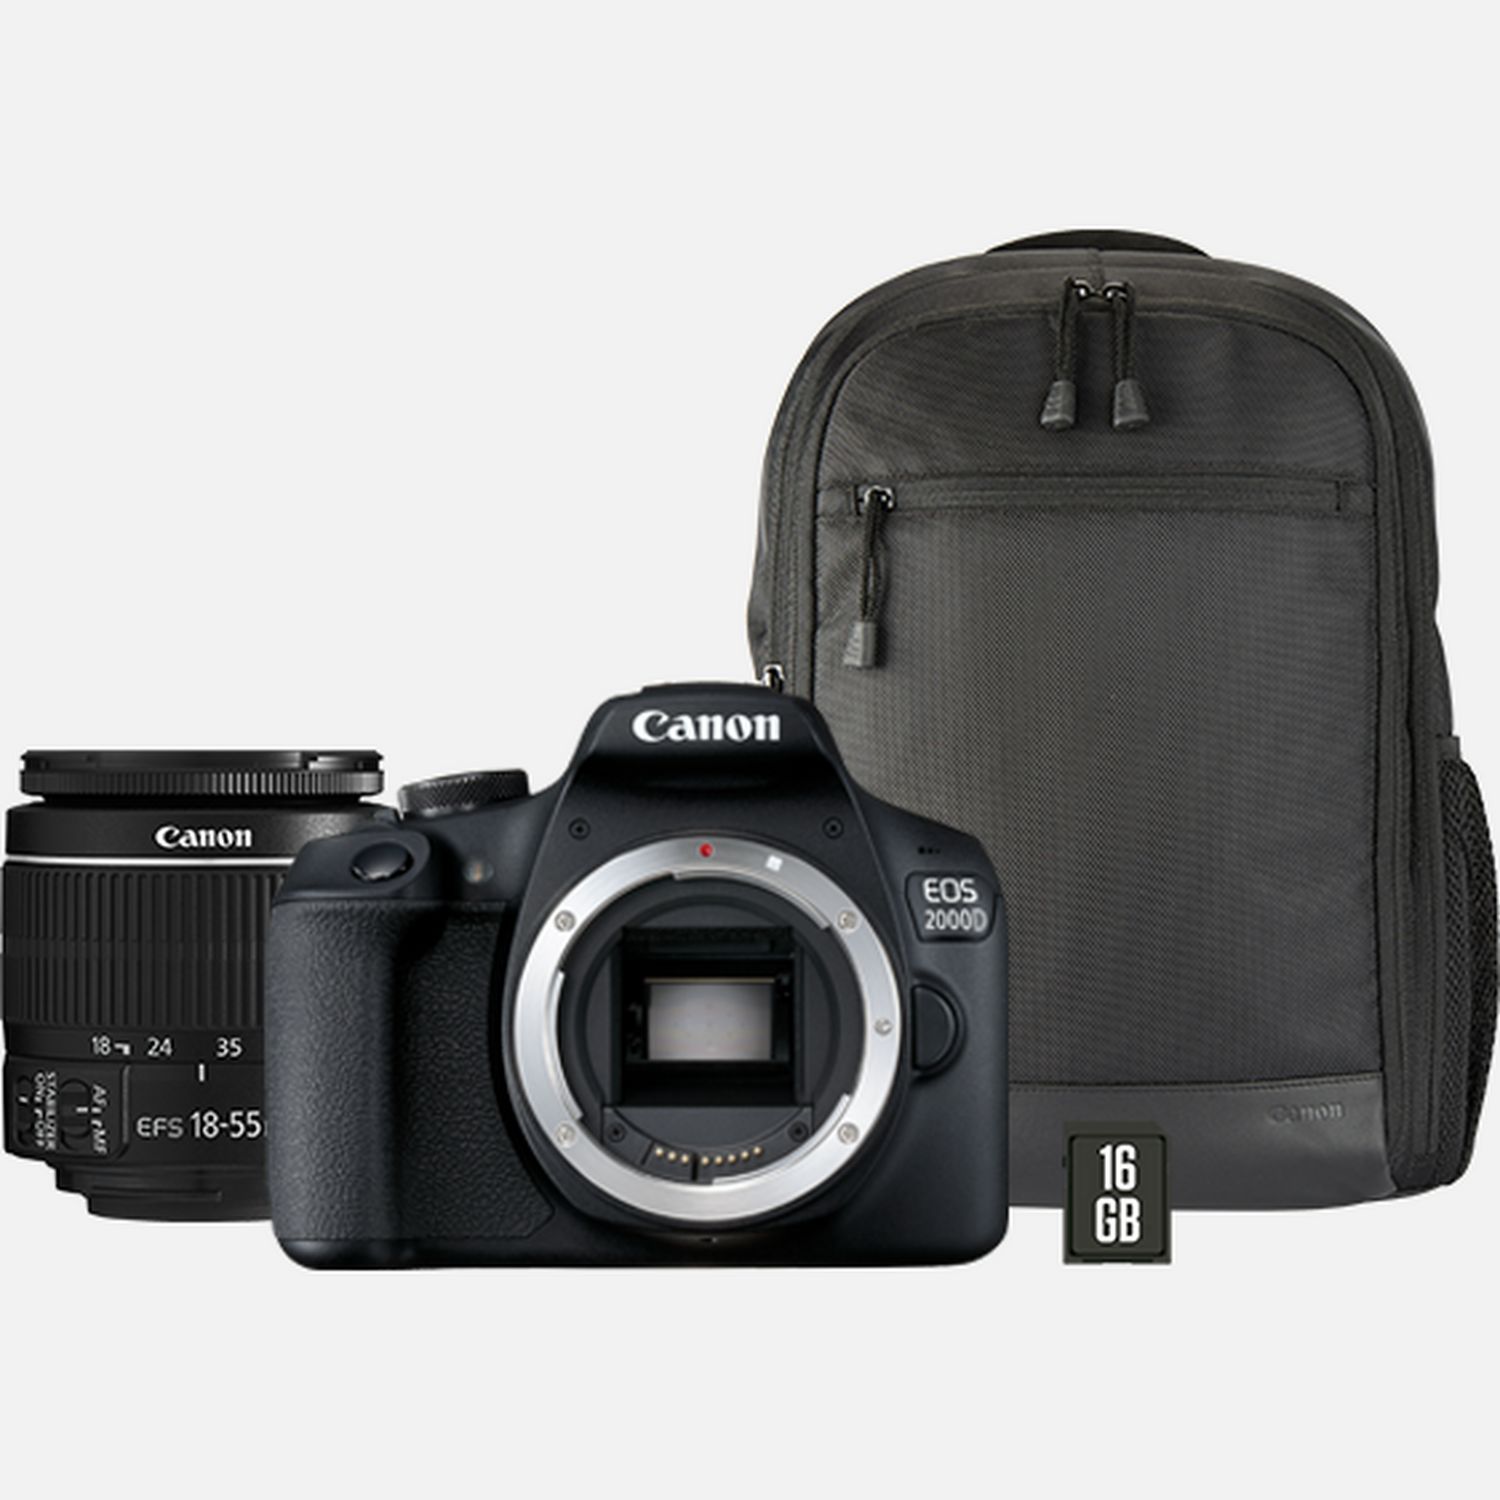 II Deutschland Canon Objektiv WLAN-Kameras 2000D + + IS 18-55mm Shop EF-S Rucksack in + Canon — SD-Karte EOS